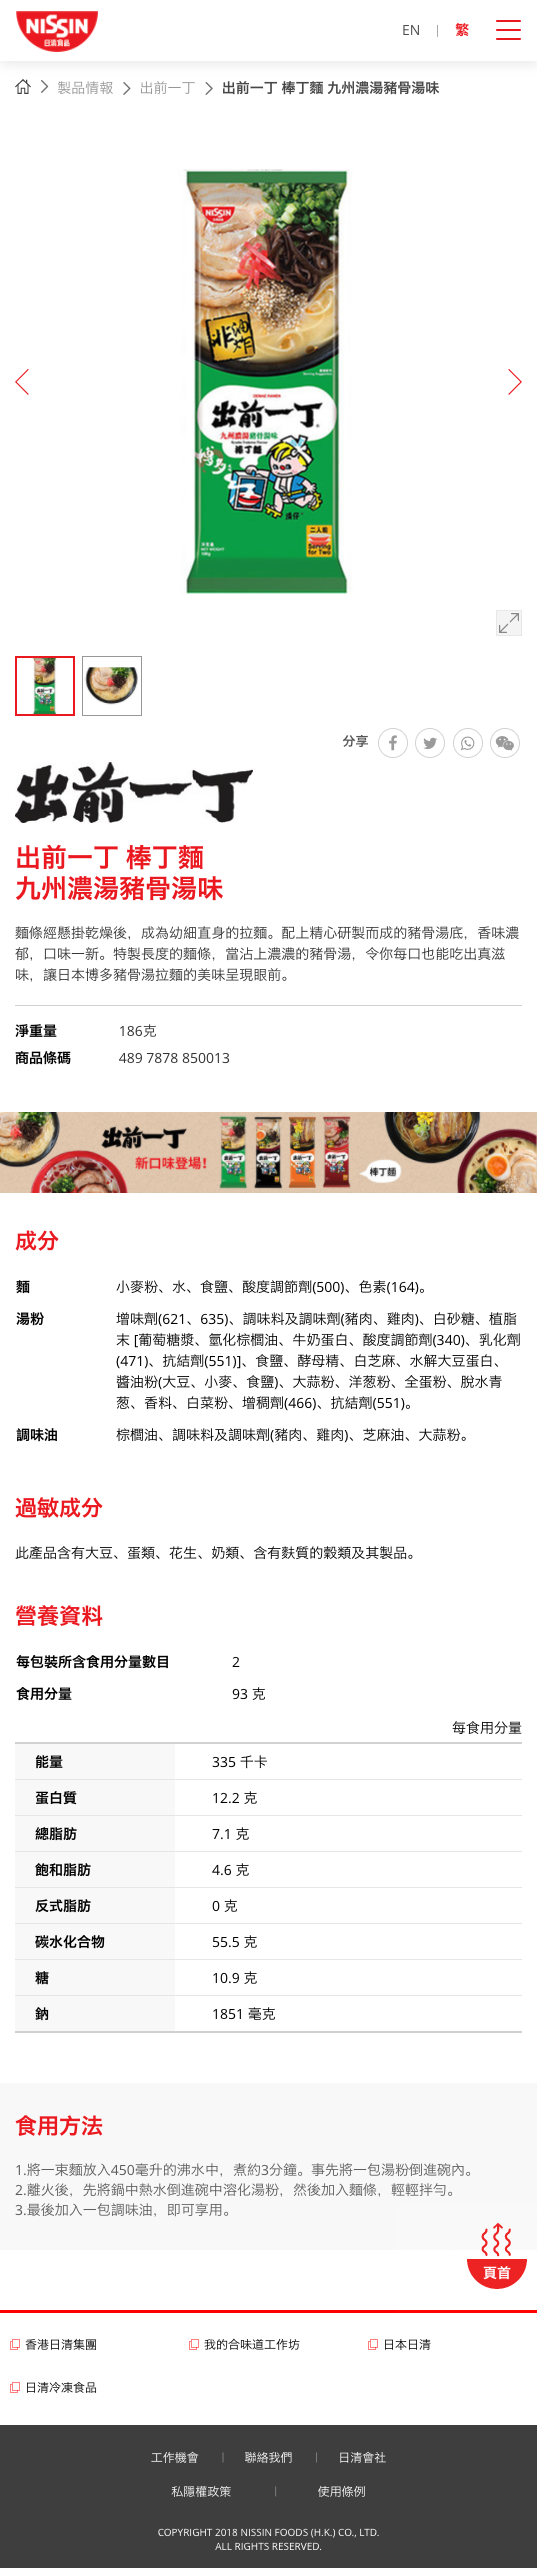 Nissin Foods HK website screenshot for tablet version 5 of 5